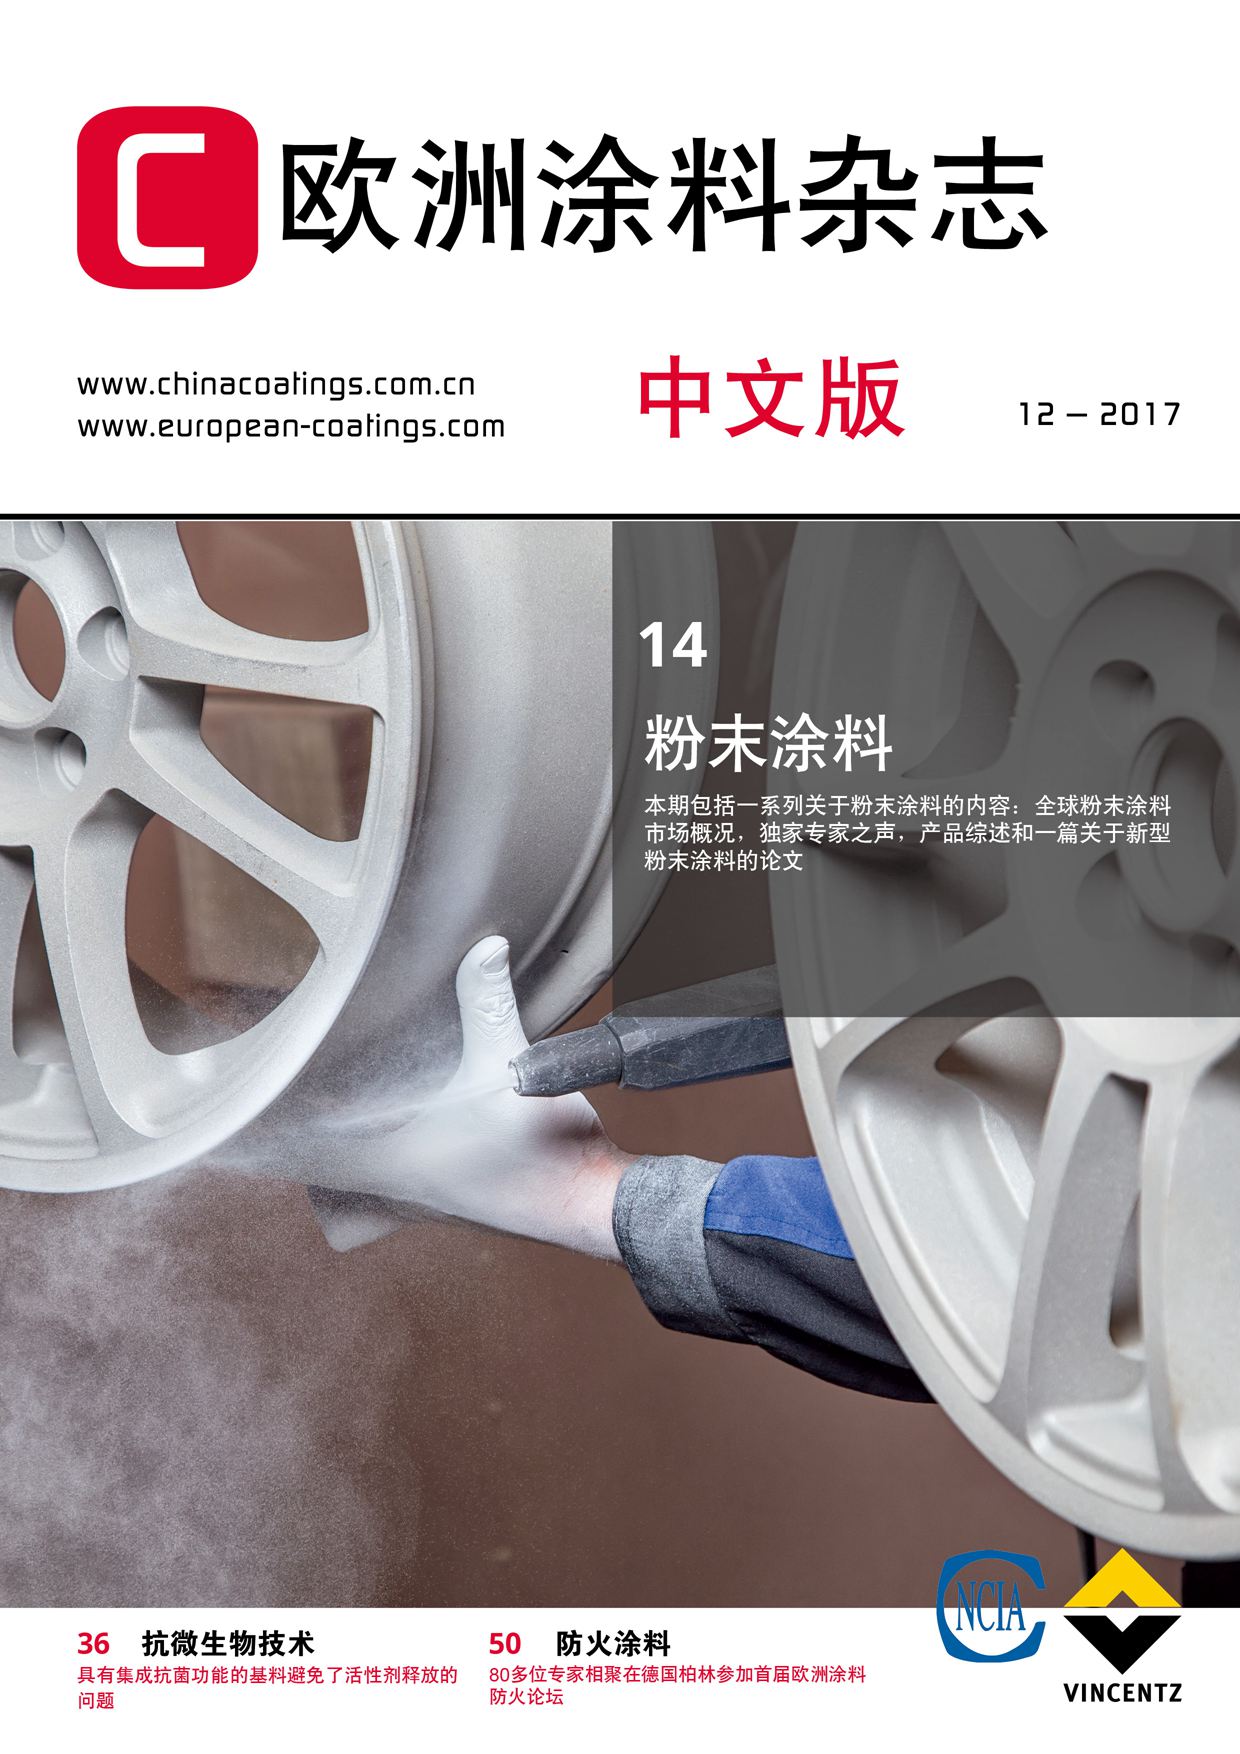 《欧洲涂料杂志中文版》2017第12期